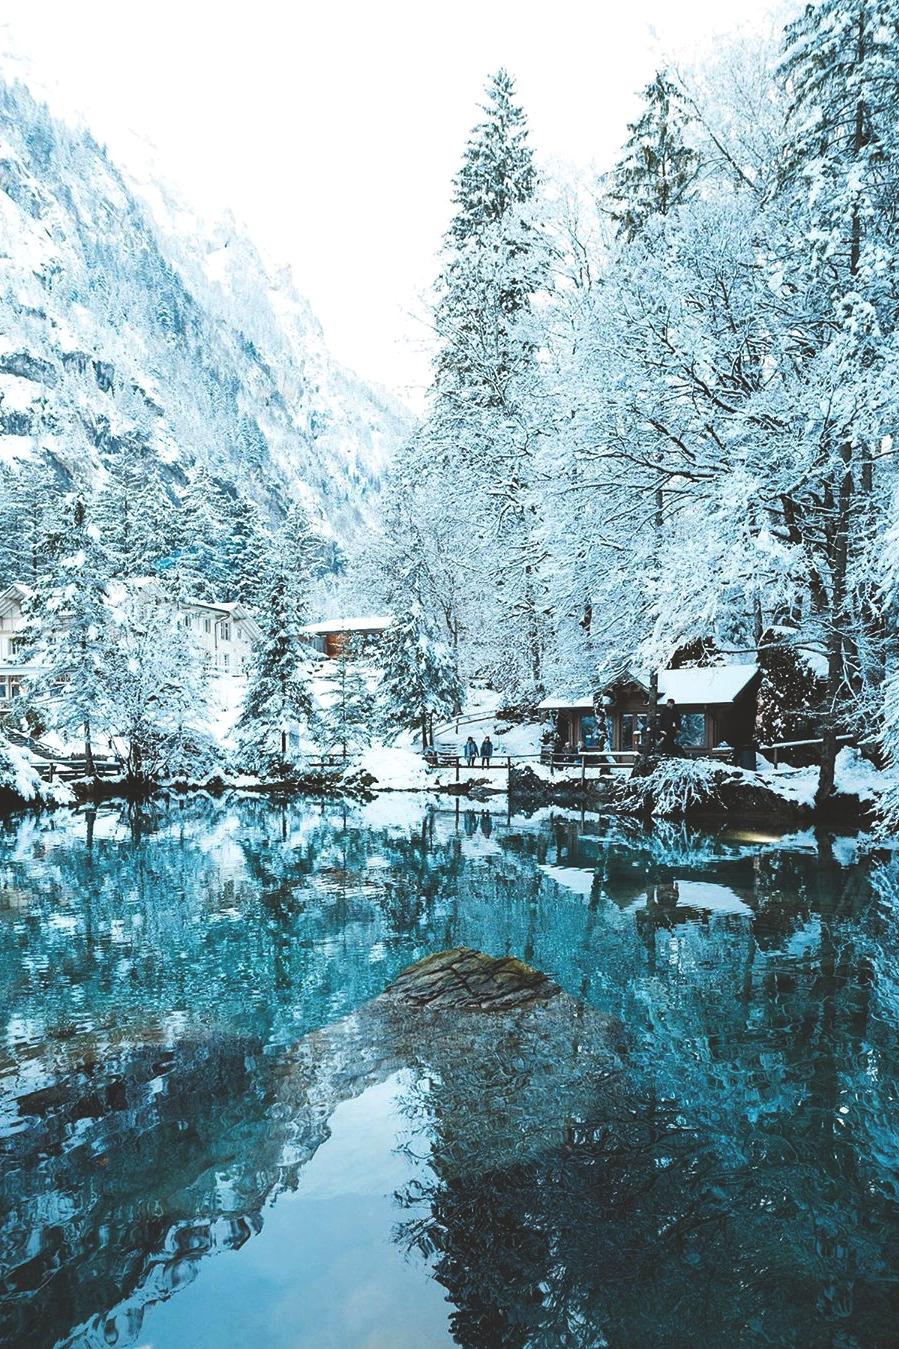 Blausee, Kander Valley, Switzerland, interestingasf*ck